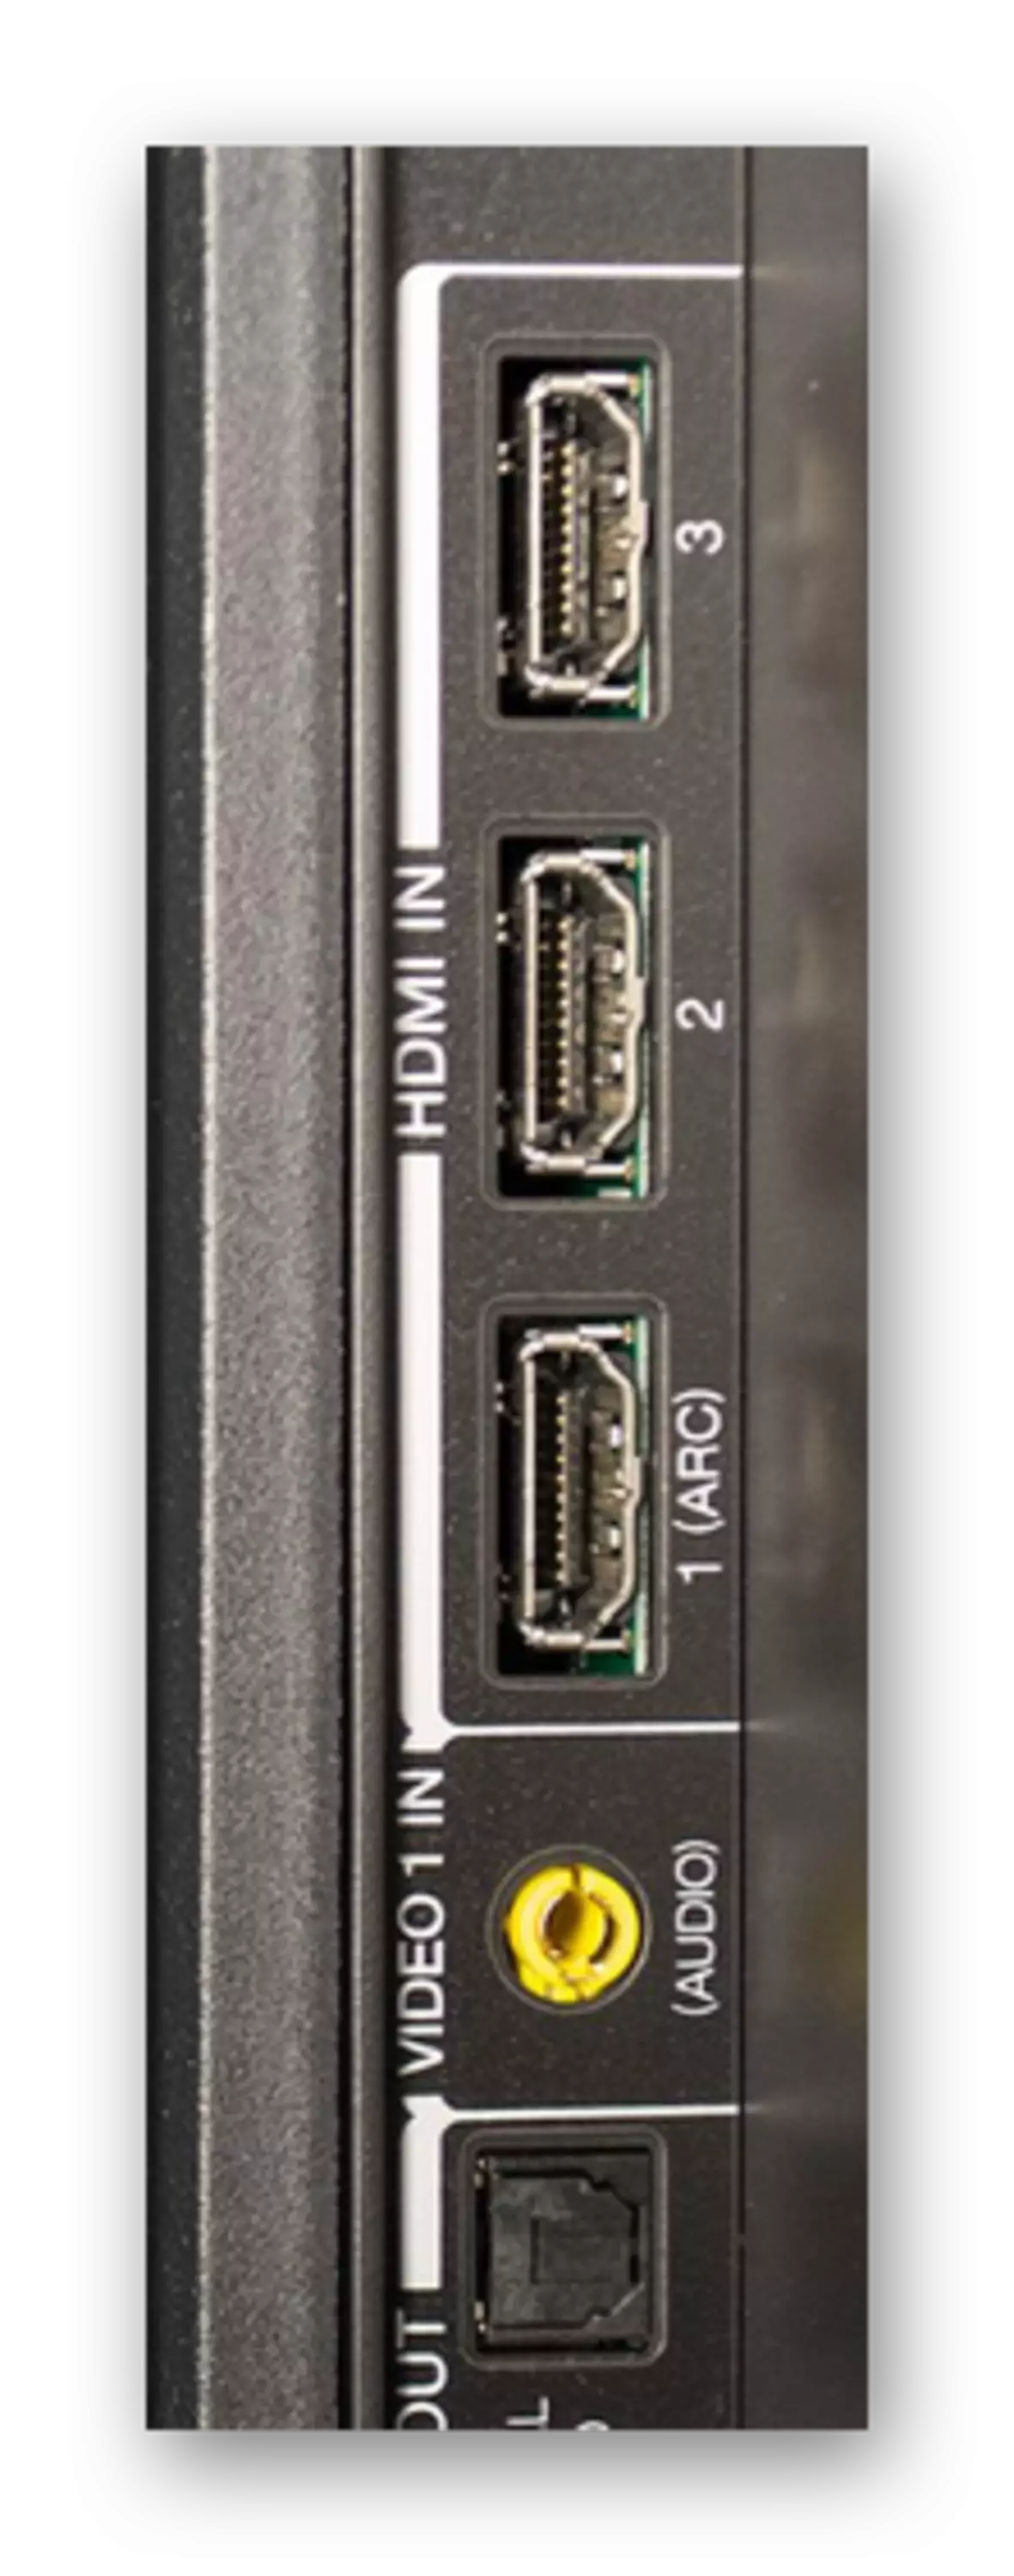 Foarbyld fan HDMI-connectors op TV